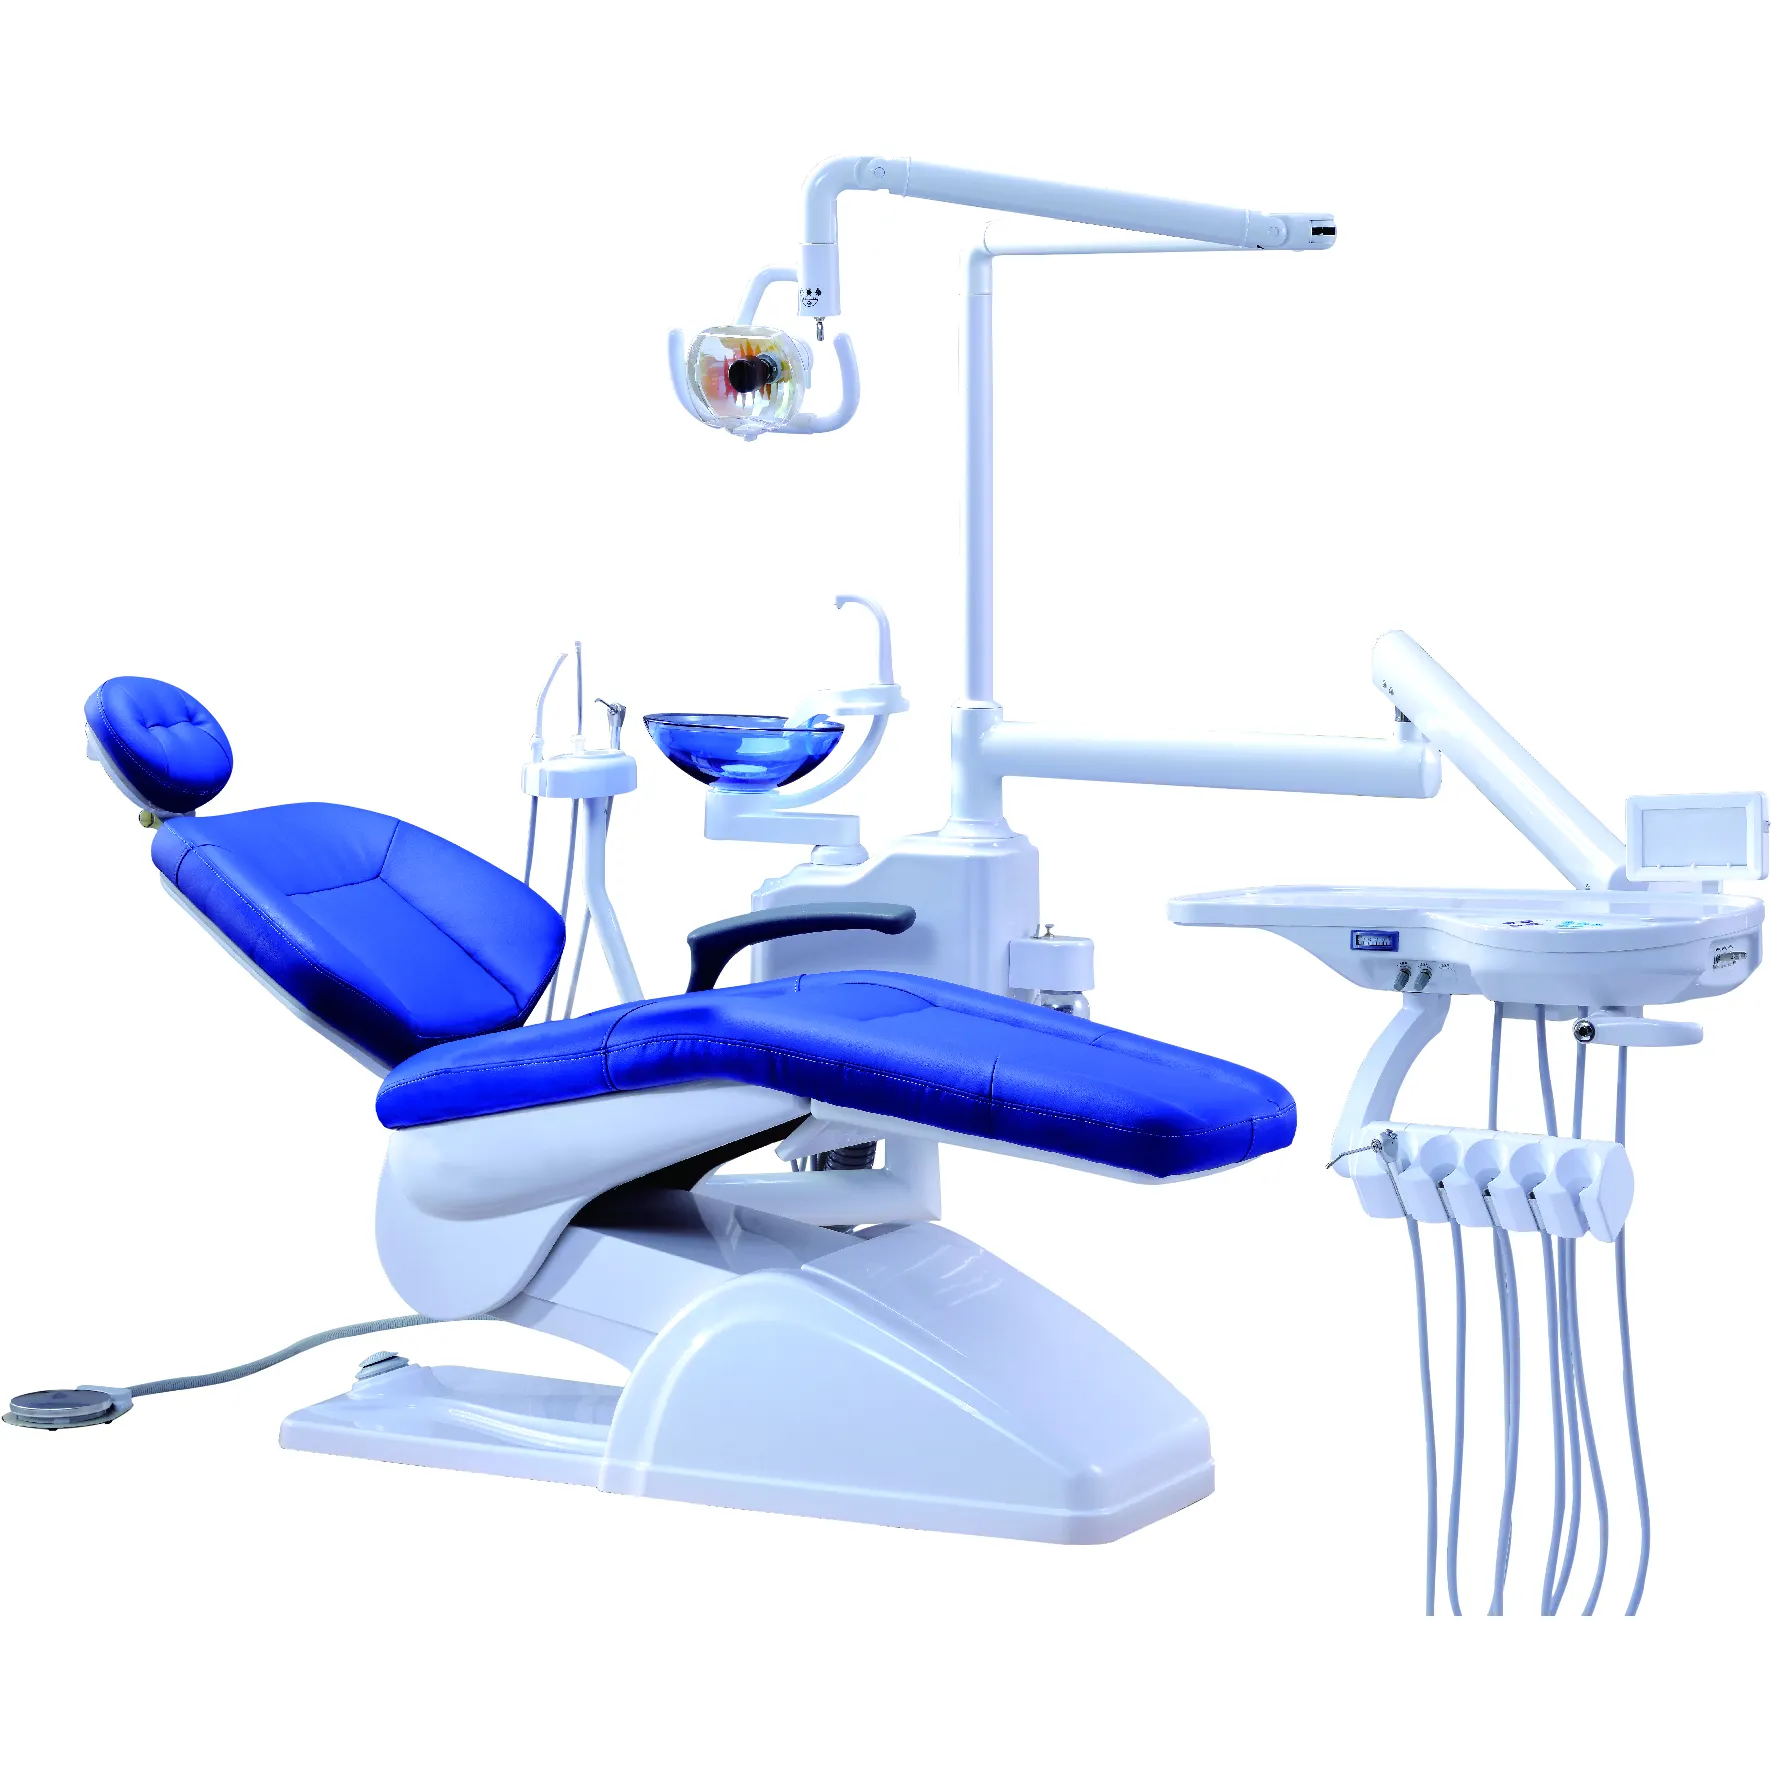 Полный комплект стоматологического кресла, стоматологическое оборудование, цена, единичный поставщик, 920 полный комплект стоматологического кресла, стоматологическая установка